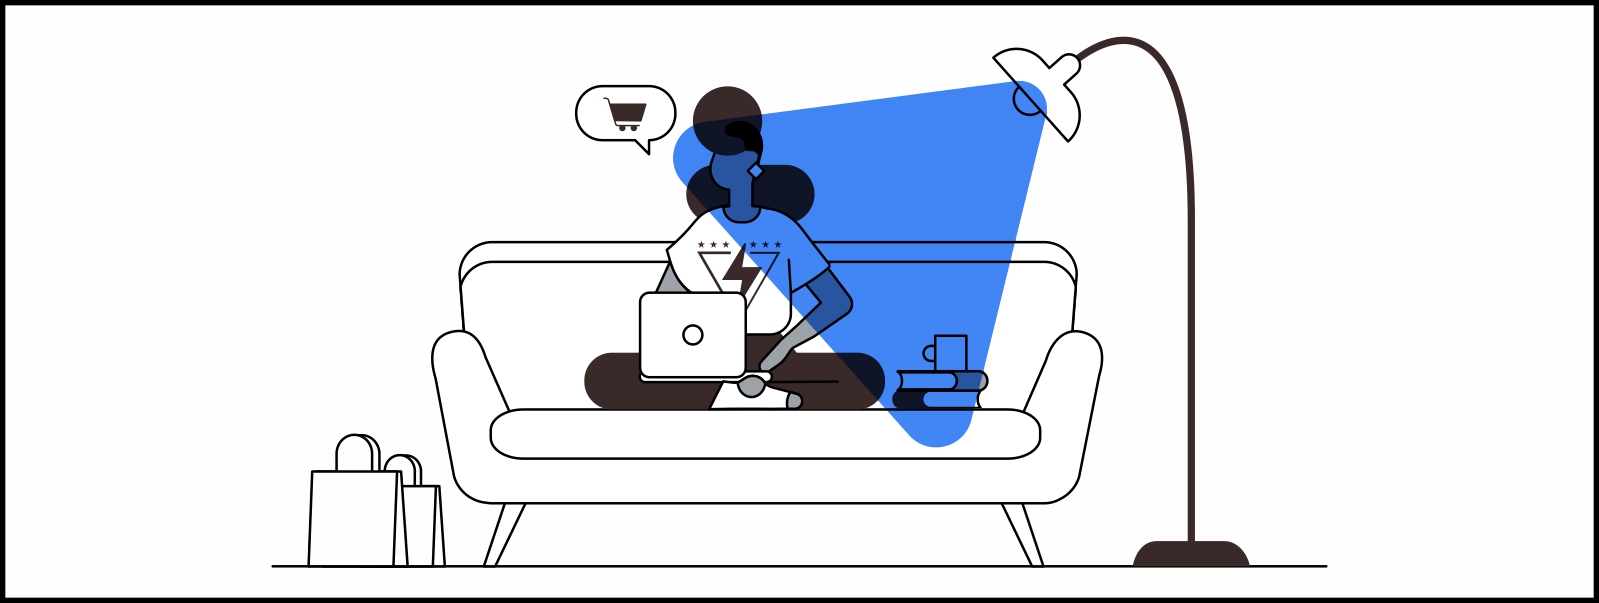 Una mujer, sentada en un sillón, mira una computadora. A un costado, unas bolsas de compras y un globo de diálogo con un carrito de shopping. A otro costado, una lámpara alta. Sobre la escena, un triángulo azul sobreimpreso.